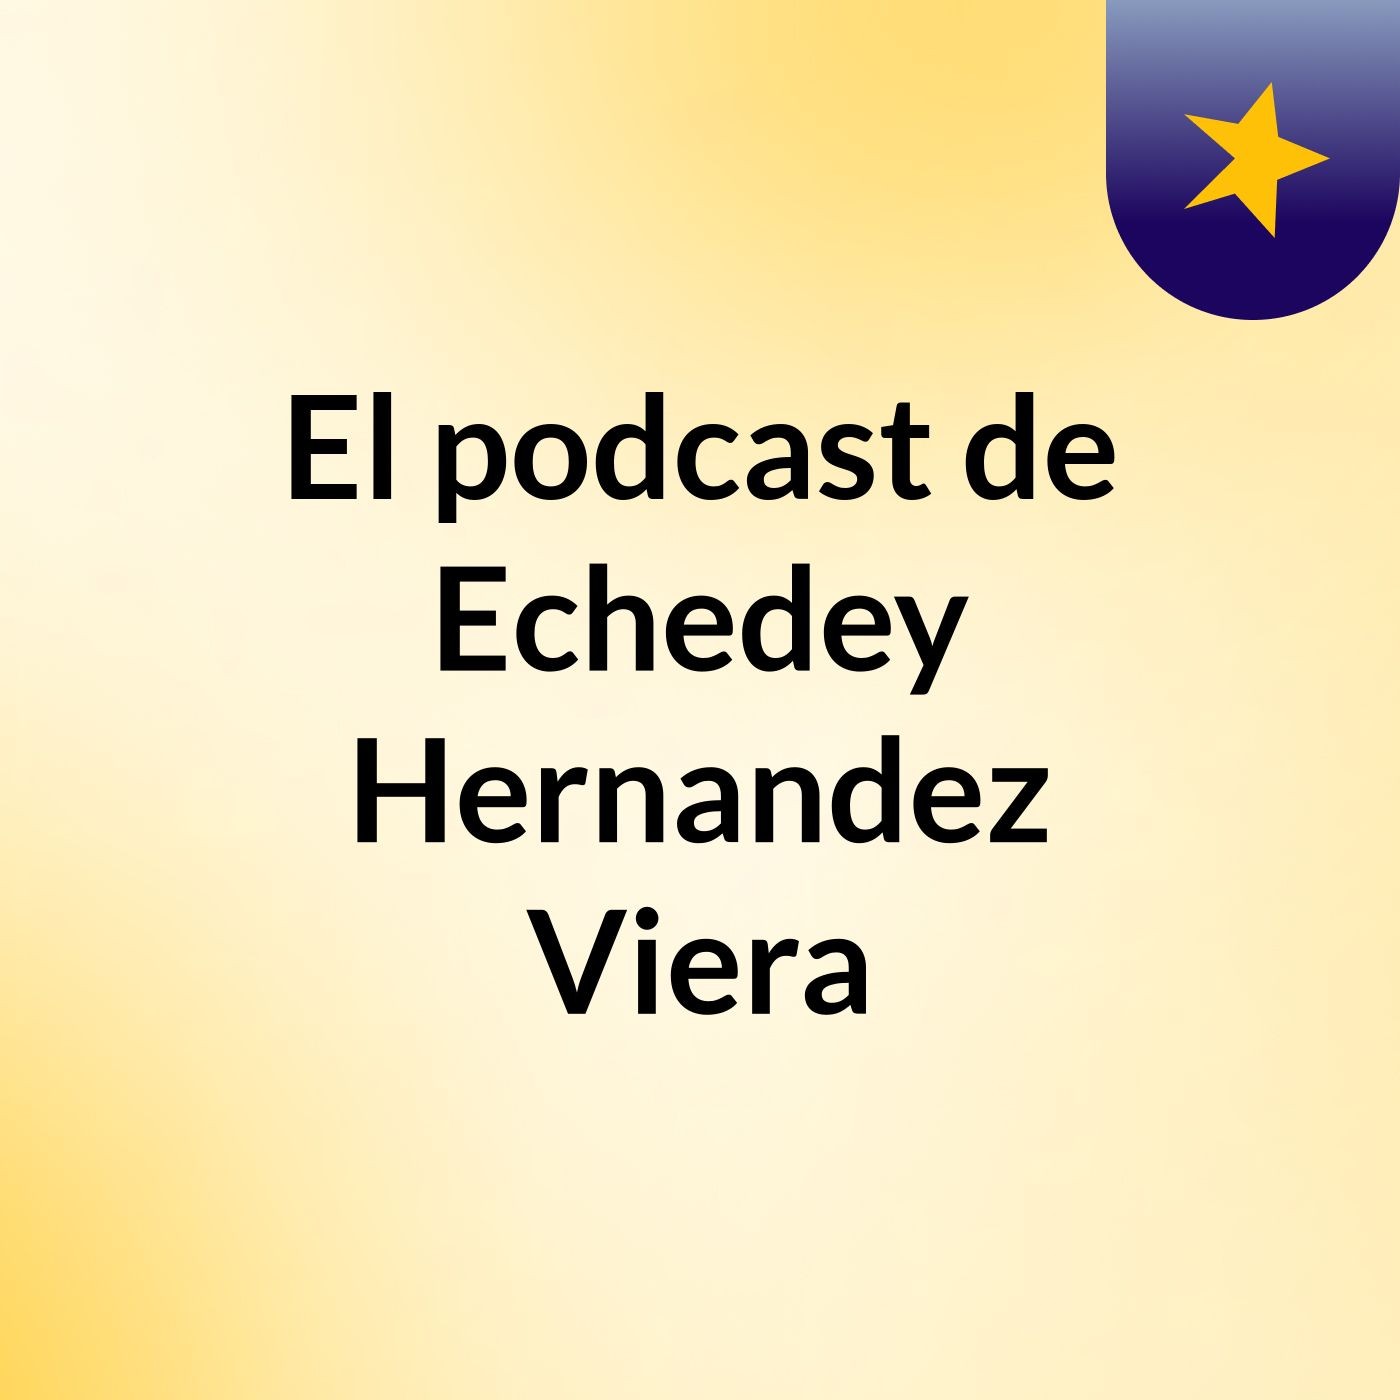 El podcast de Echedey Hernandez Viera